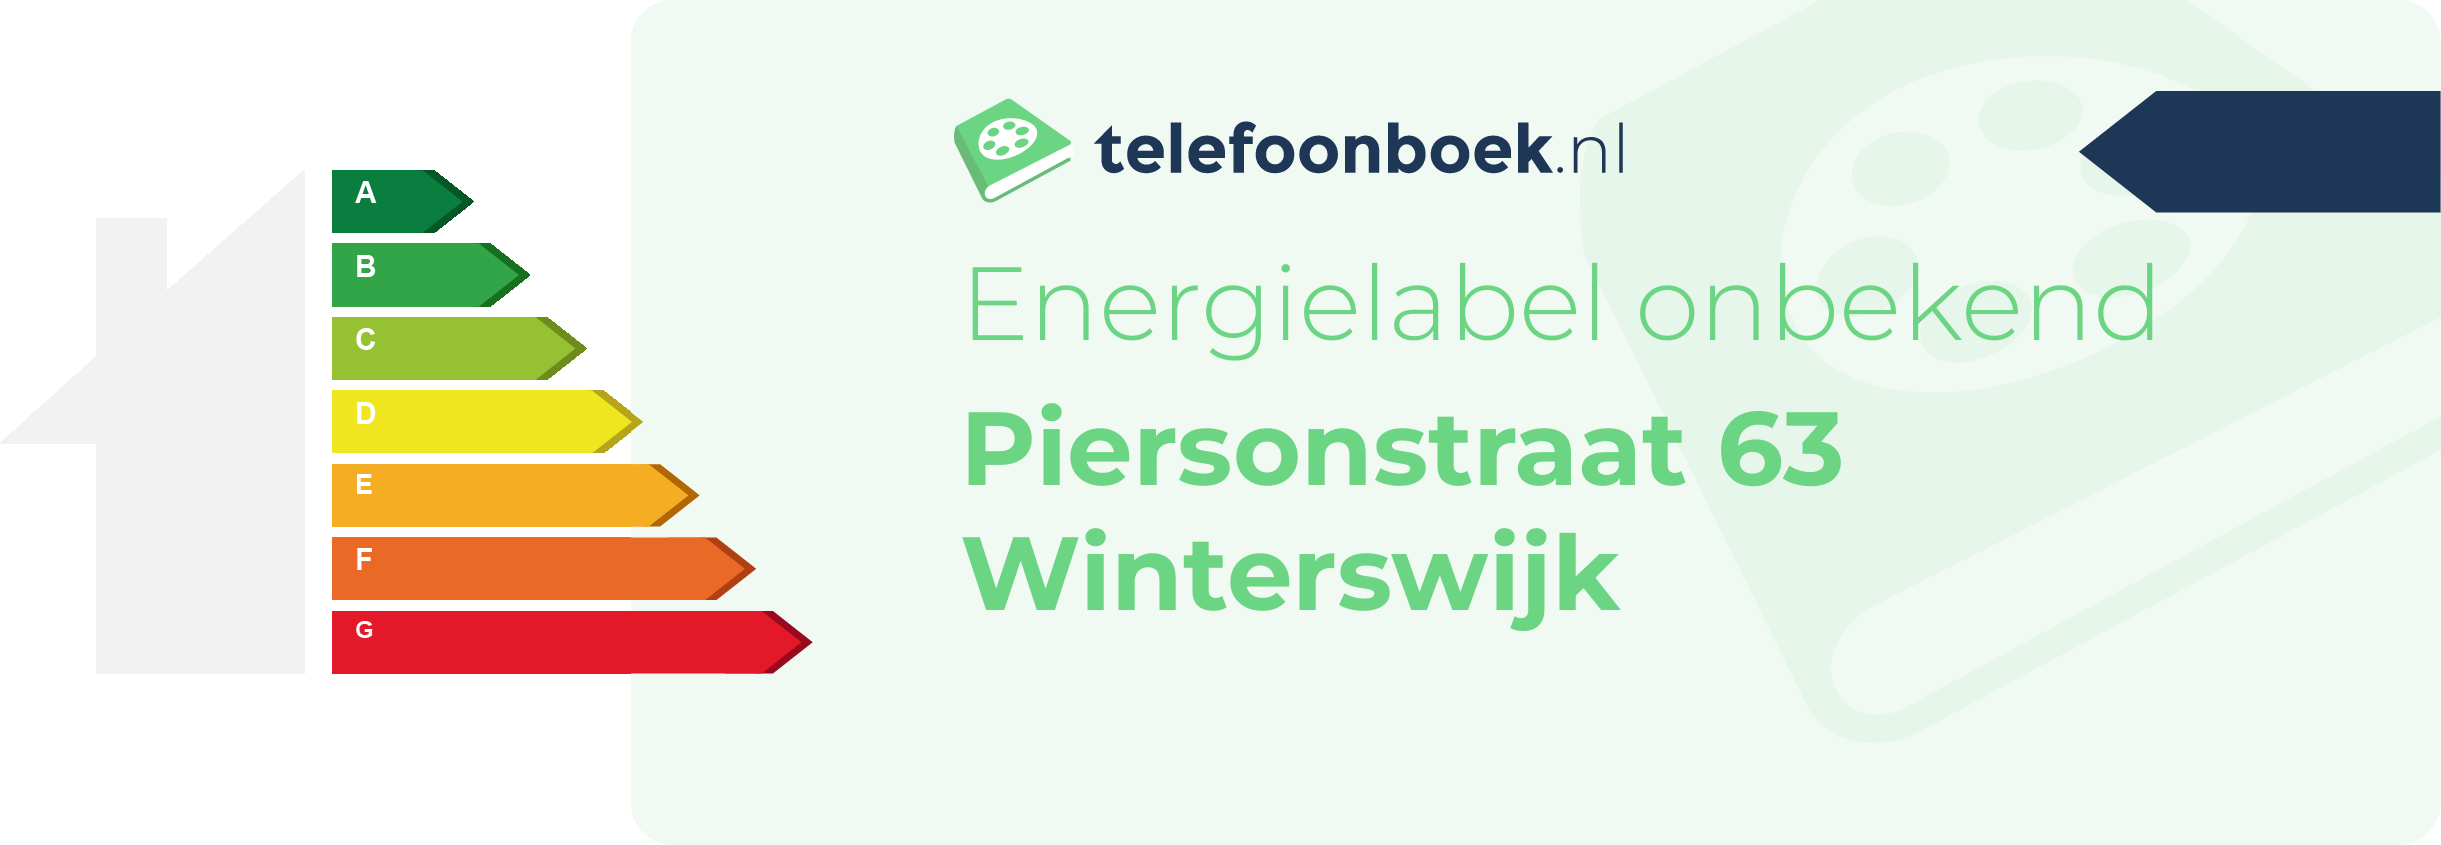 Energielabel Piersonstraat 63 Winterswijk